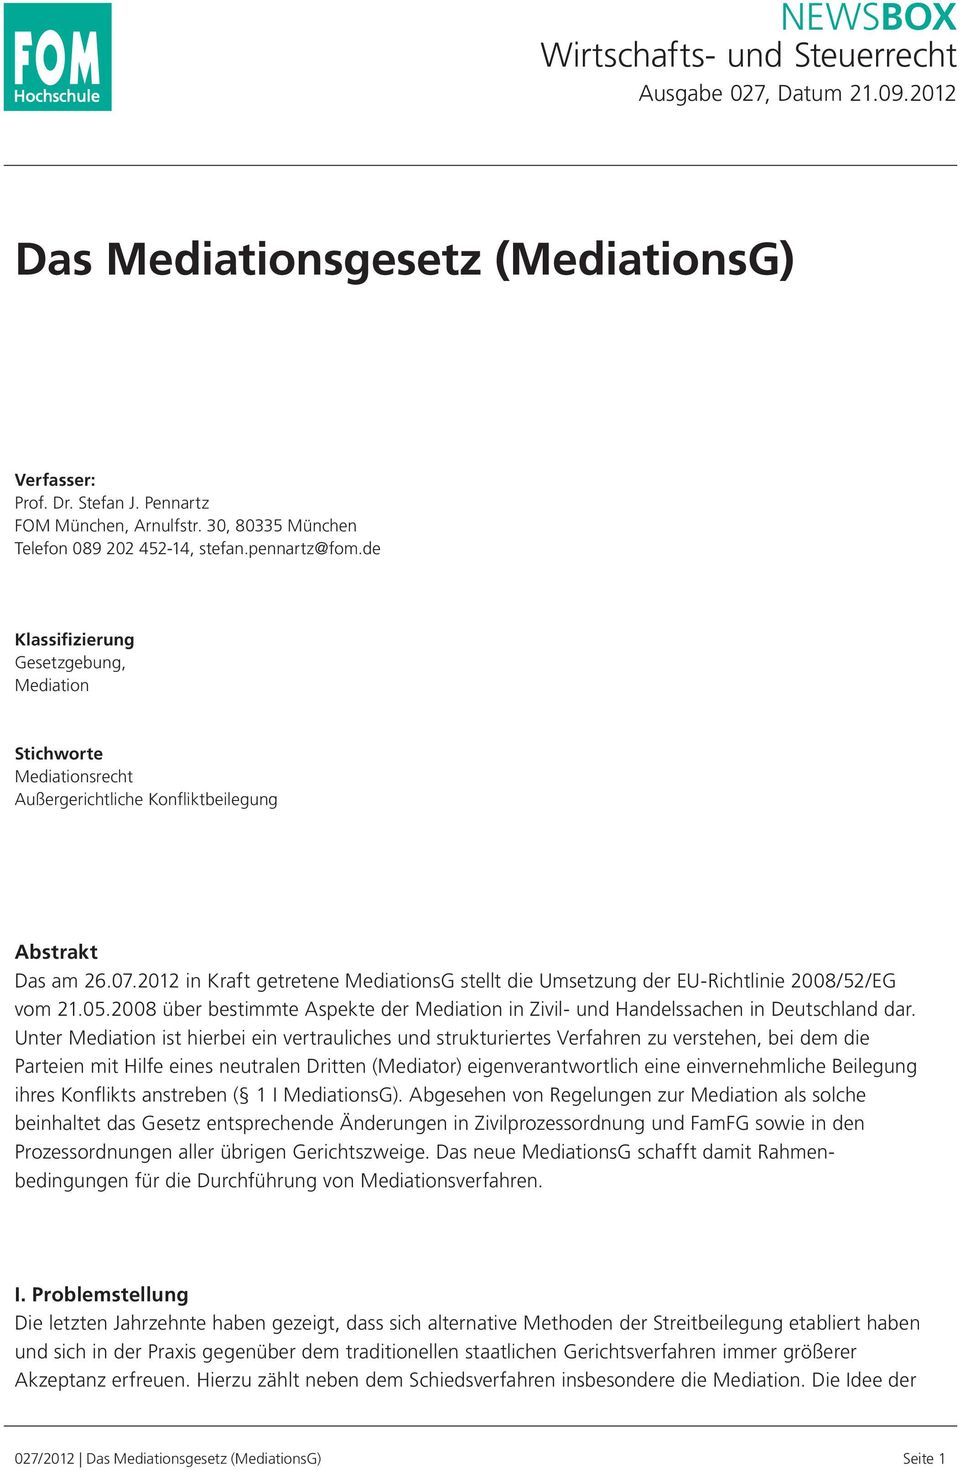 2012 in Kraft getretene MediationsG stellt die Umsetzung der EU-Richtlinie 2008/52/EG vom 21.05.2008 über bestimmte Aspekte der Mediation in Zivil- und Handelssachen in Deutschland dar.